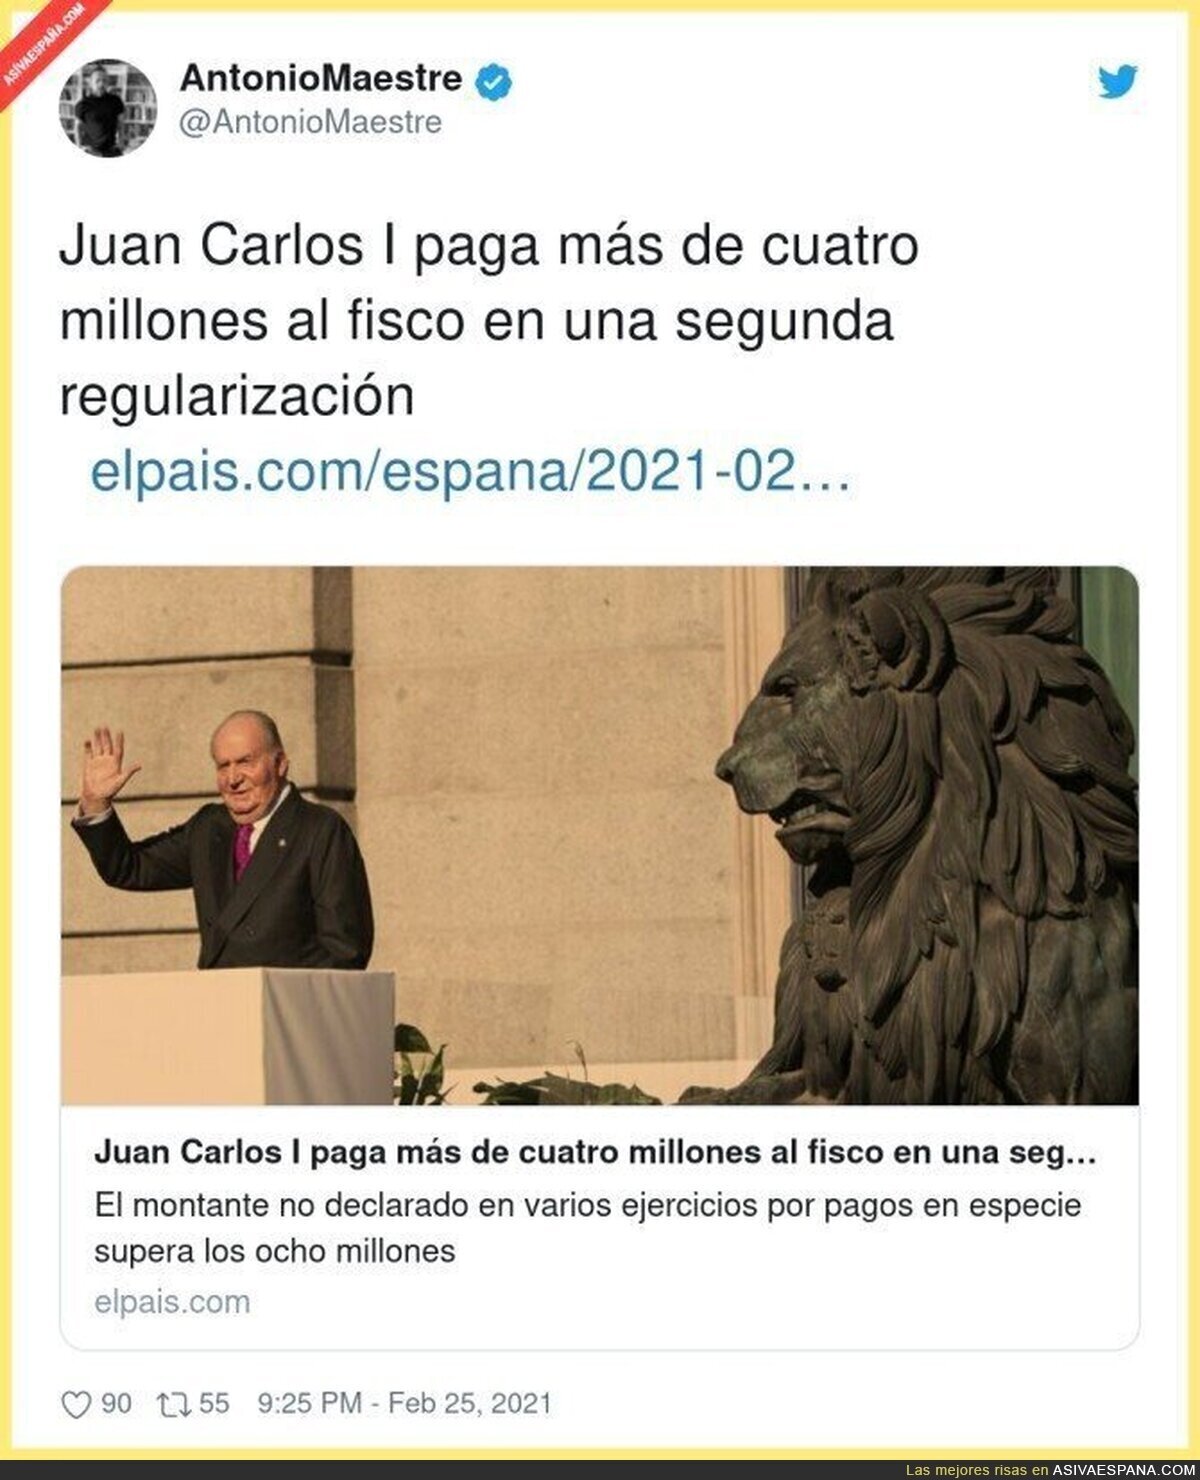 Menos mal que Juan Carlos tenía todo en regla...